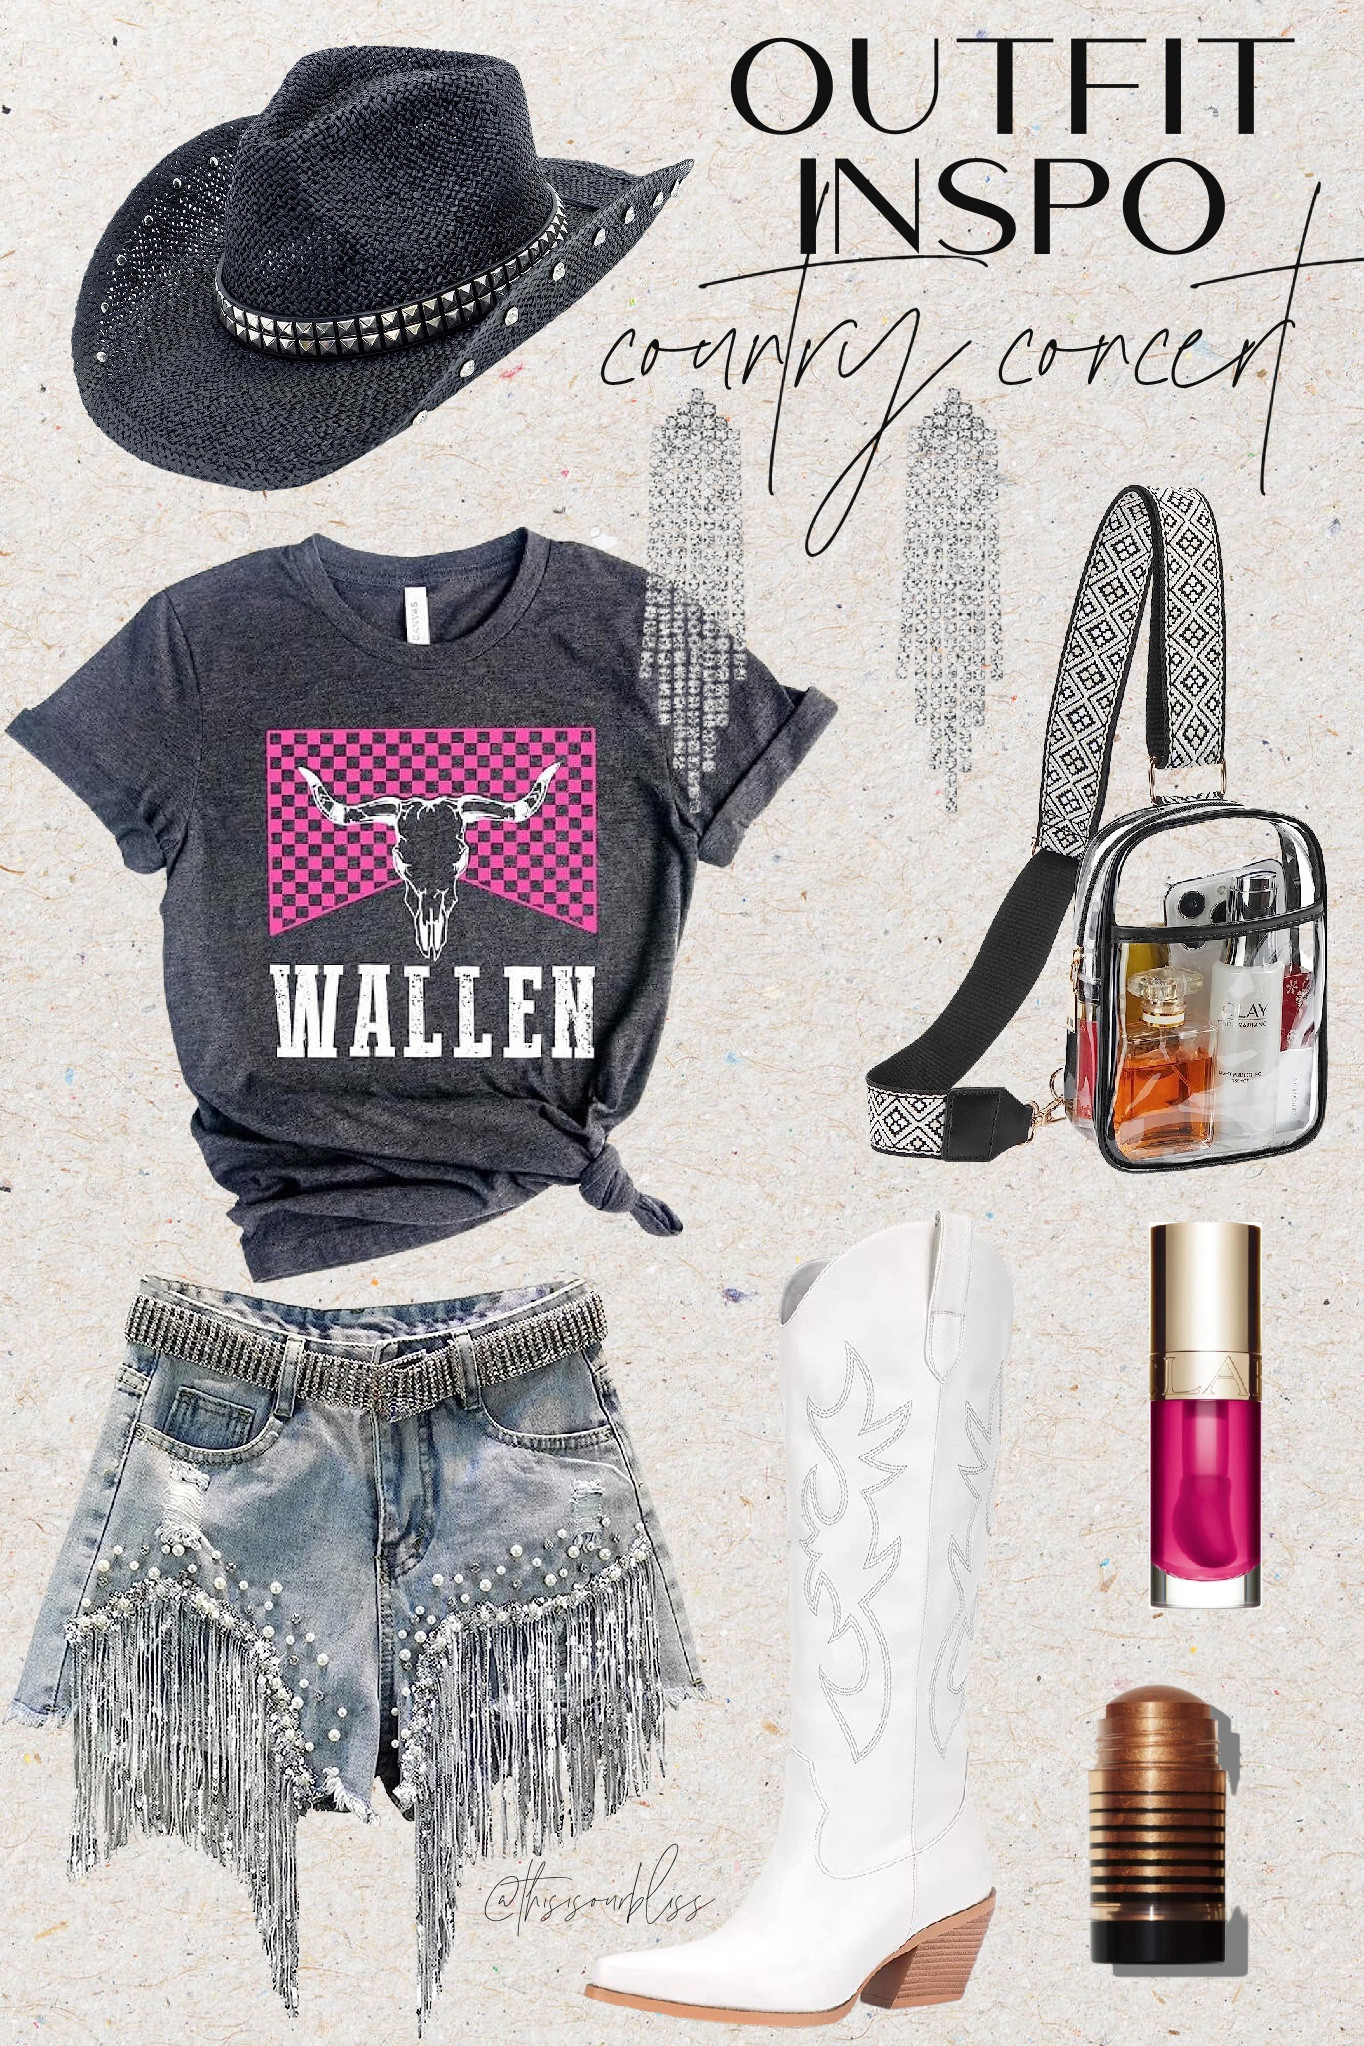 Morgan Wallen T-Shirt, Cowboy Wallen Shirt, Pink Leopard Design Outfit,  Country Concert Shirt, Western Shirt